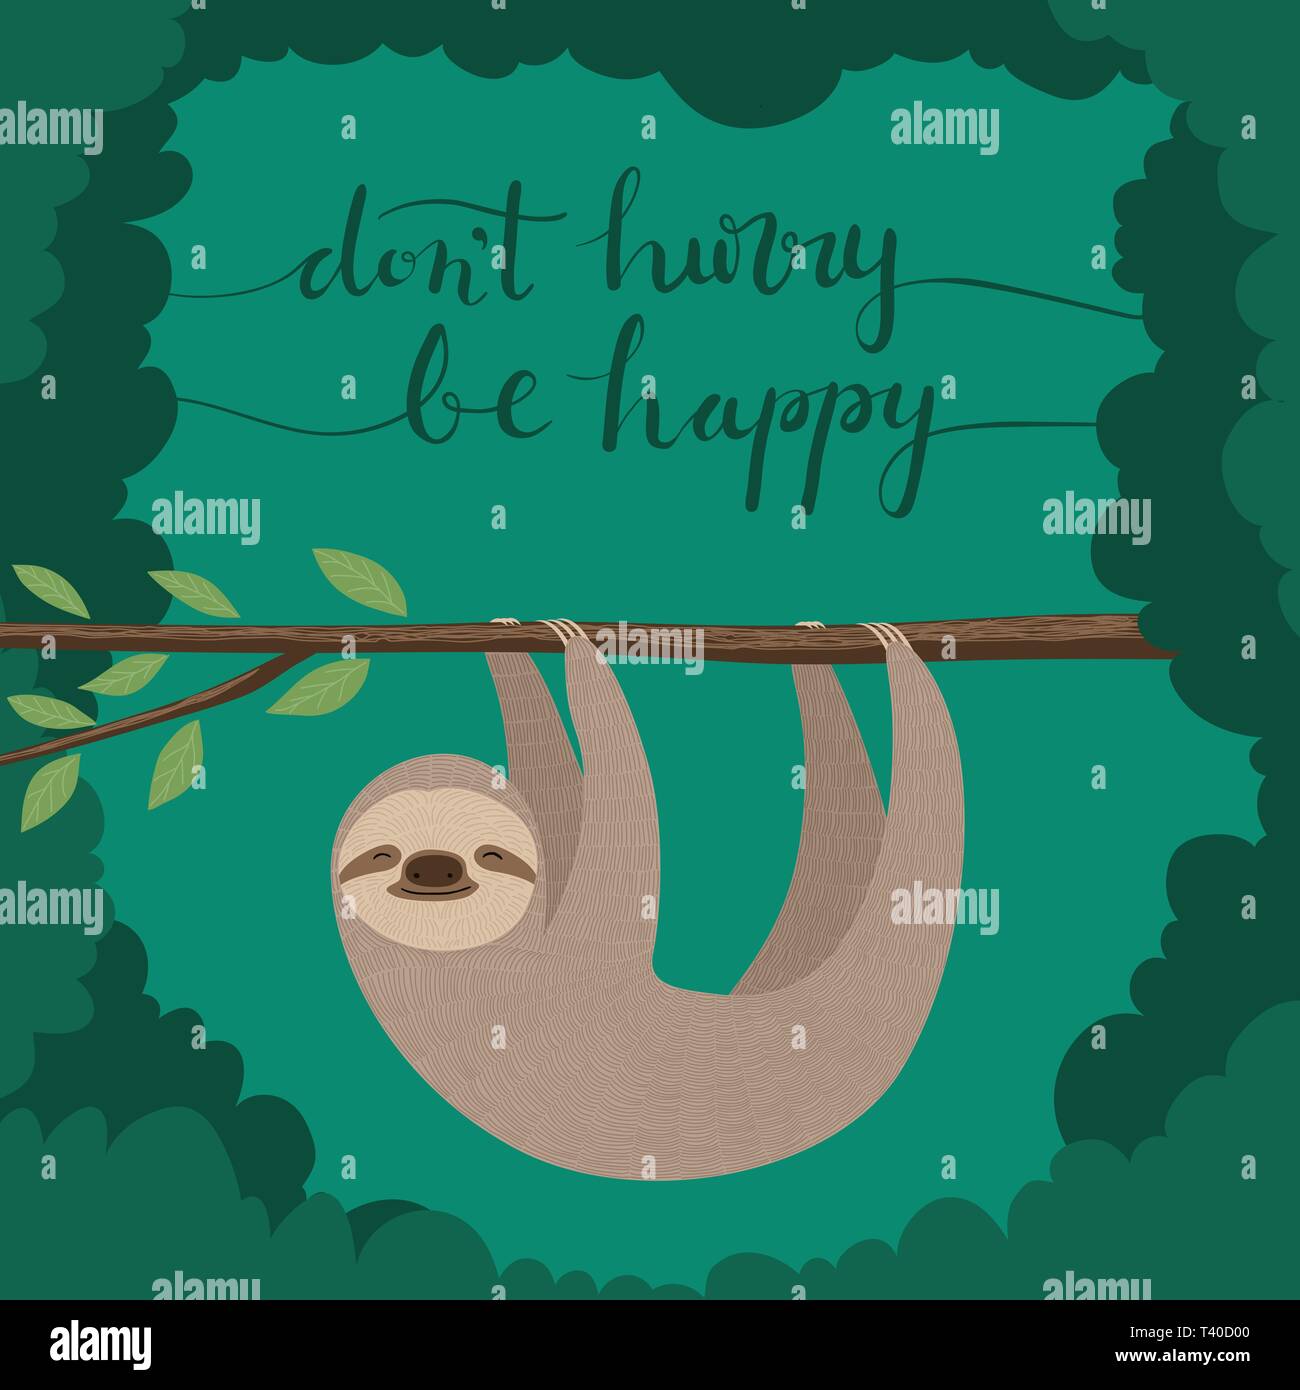 Illustrazione di carino bradipo appeso su un ramo di albero con le scritte a mano citazione "Non ha fretta di essere felice' Illustrazione Vettoriale